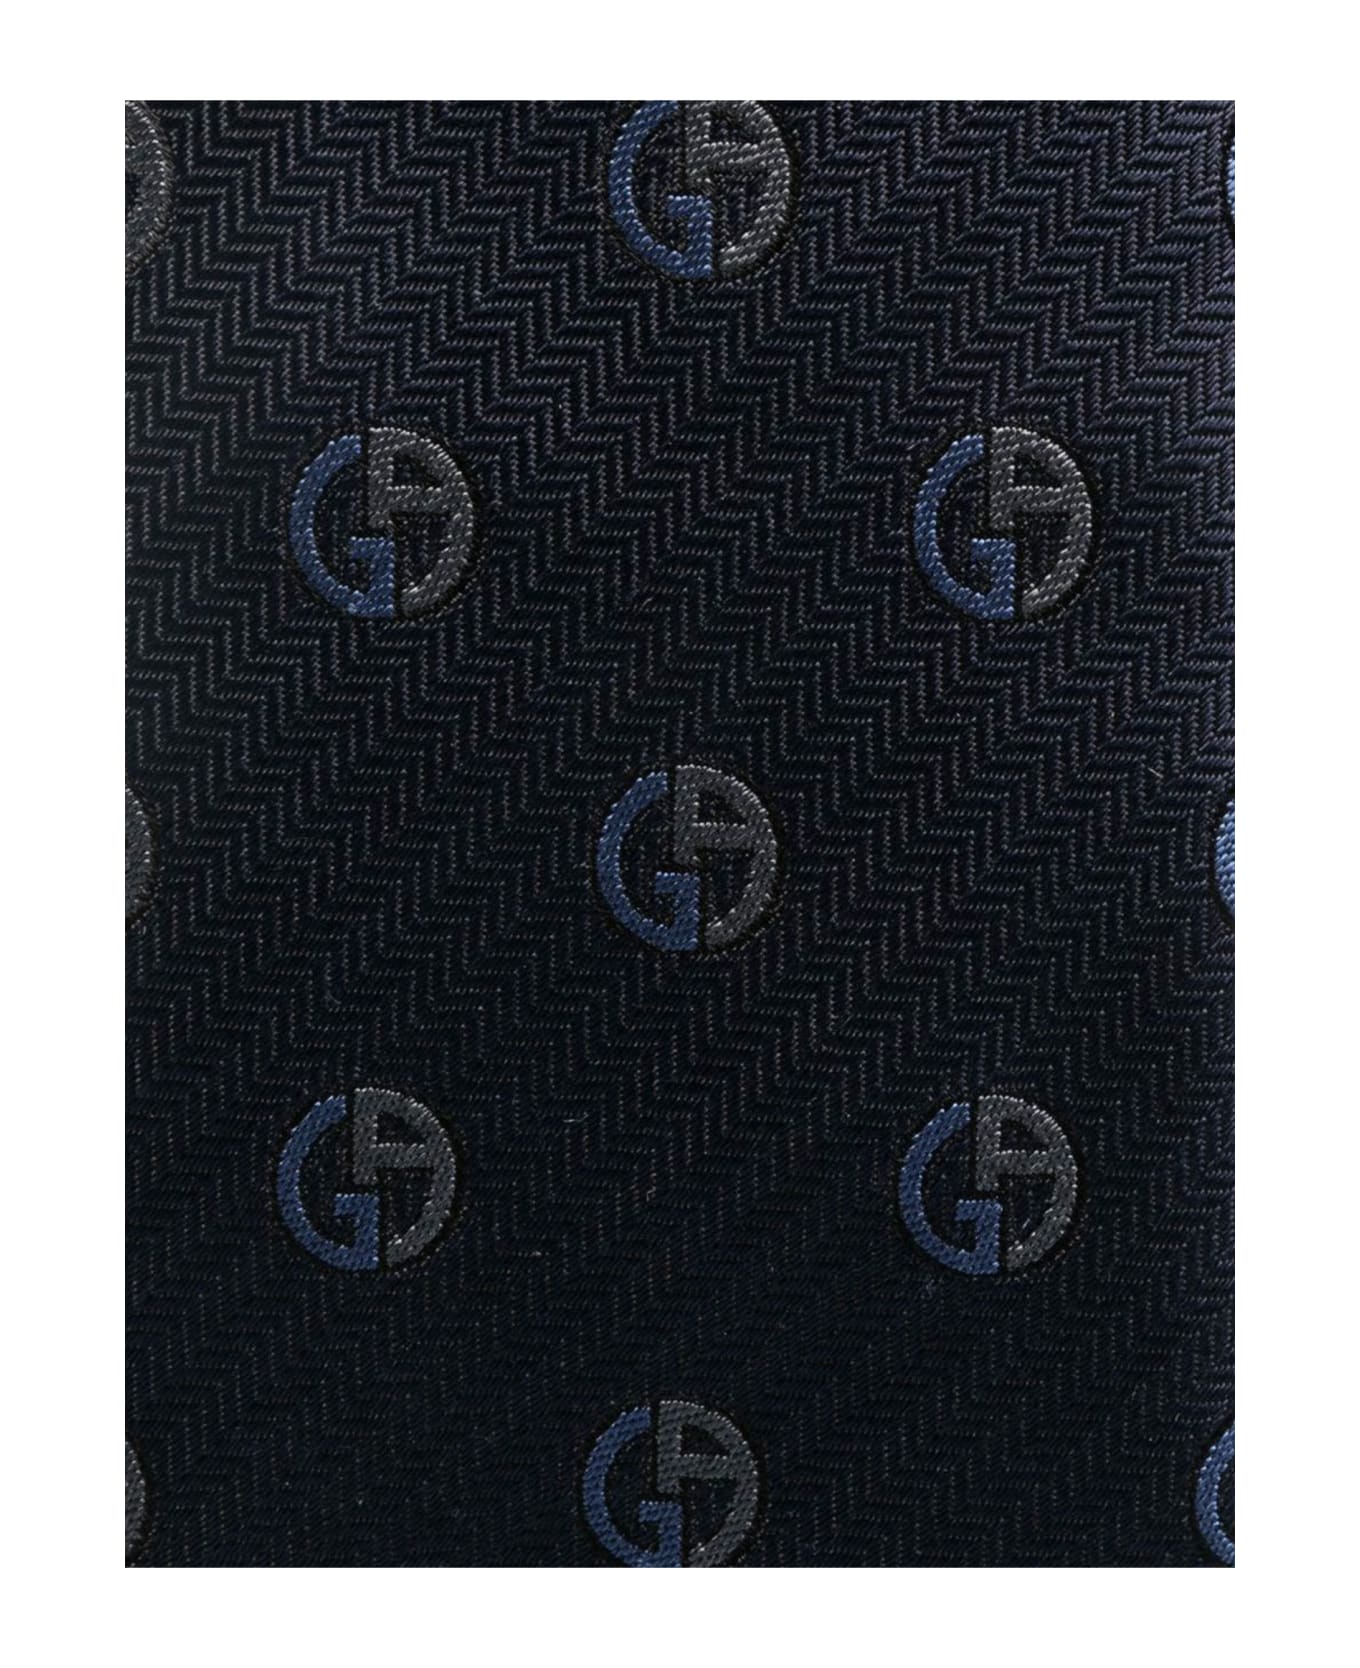 Giorgio Armani Woven Jacquard Tie C - Black